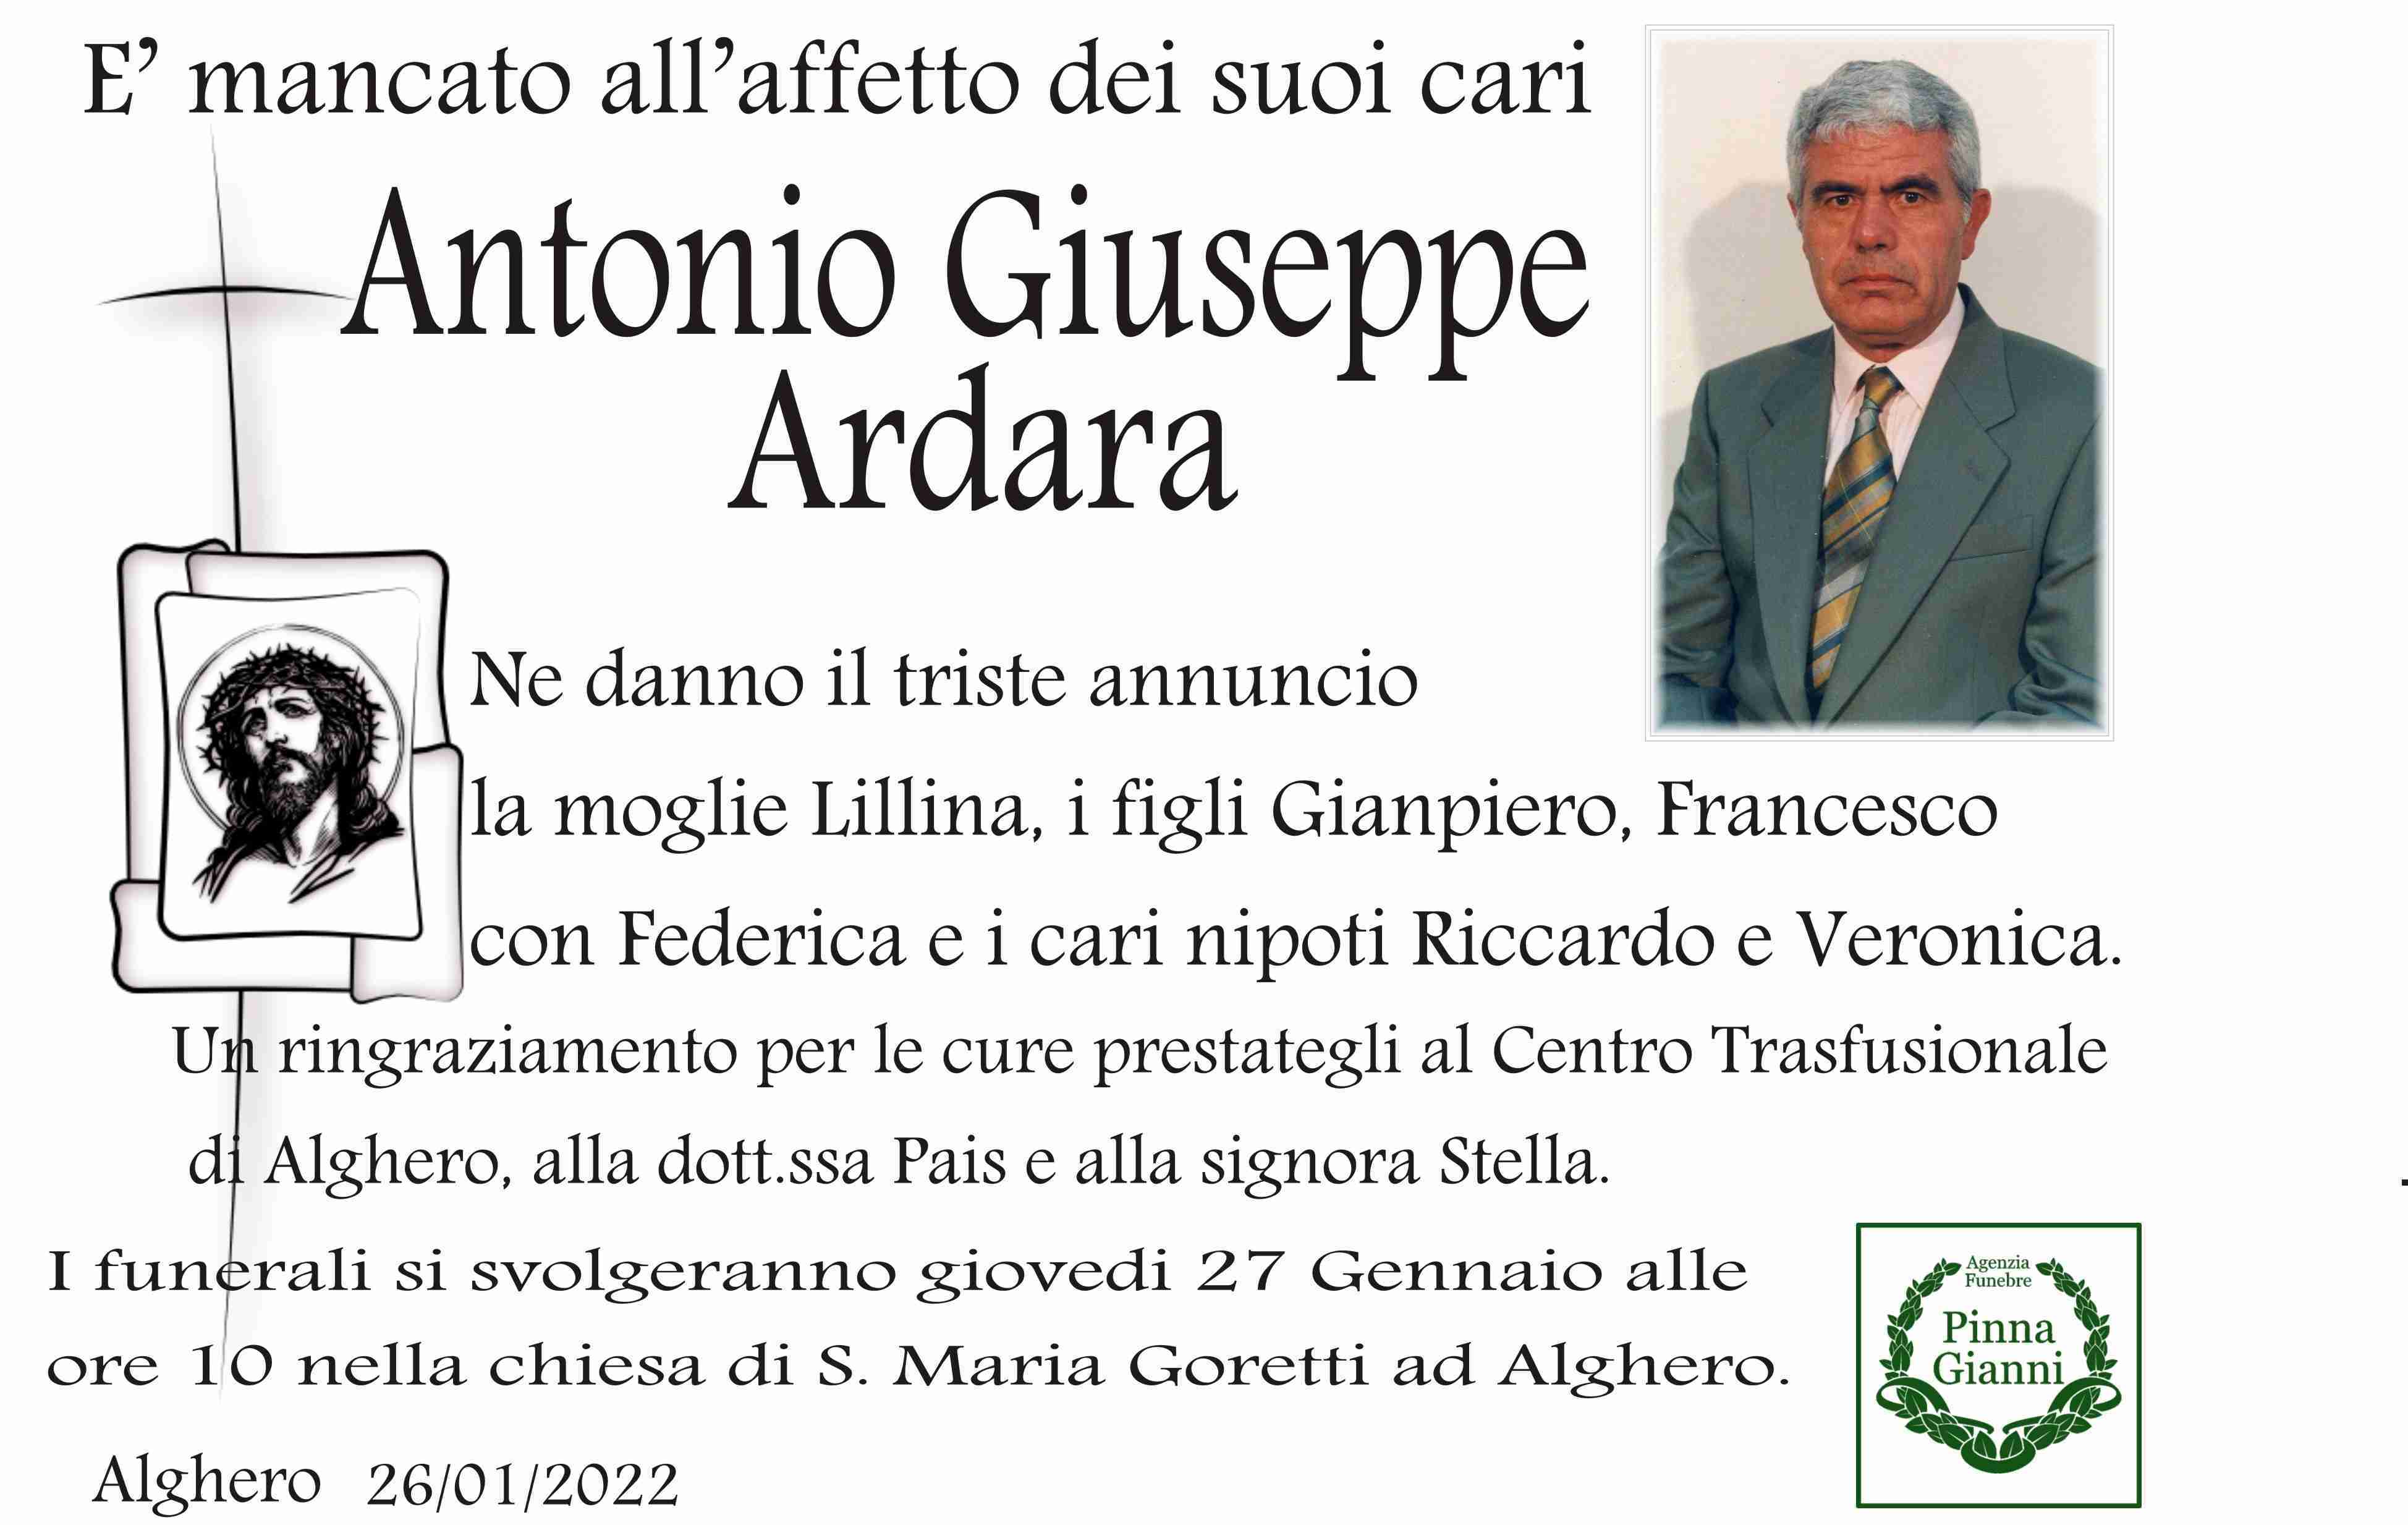 Antonio Giuseppe Ardara